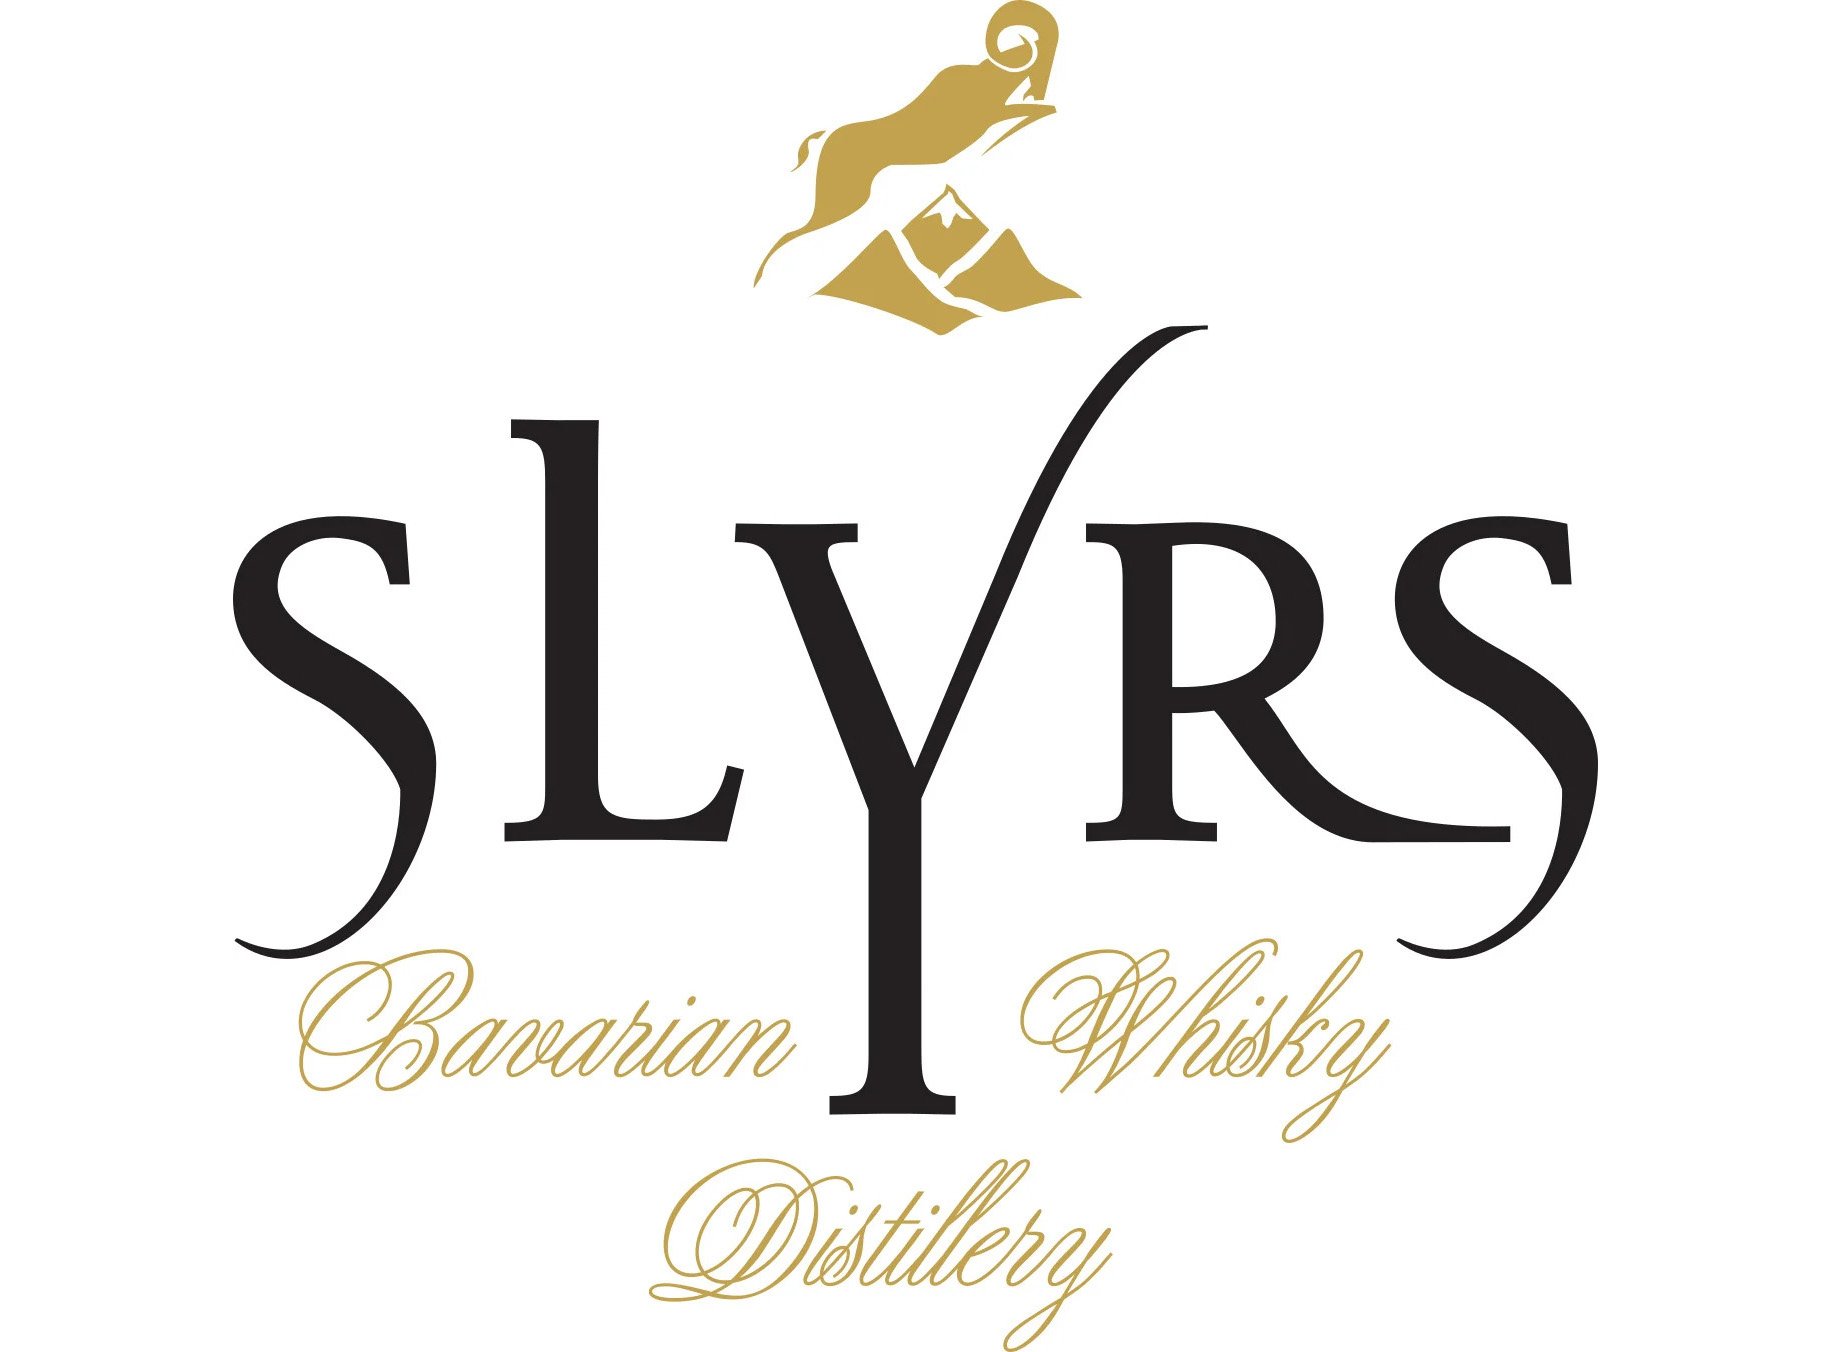 Slyrs_2020_bavarian_whisky_distillery_4c_black_letter_gold_neu